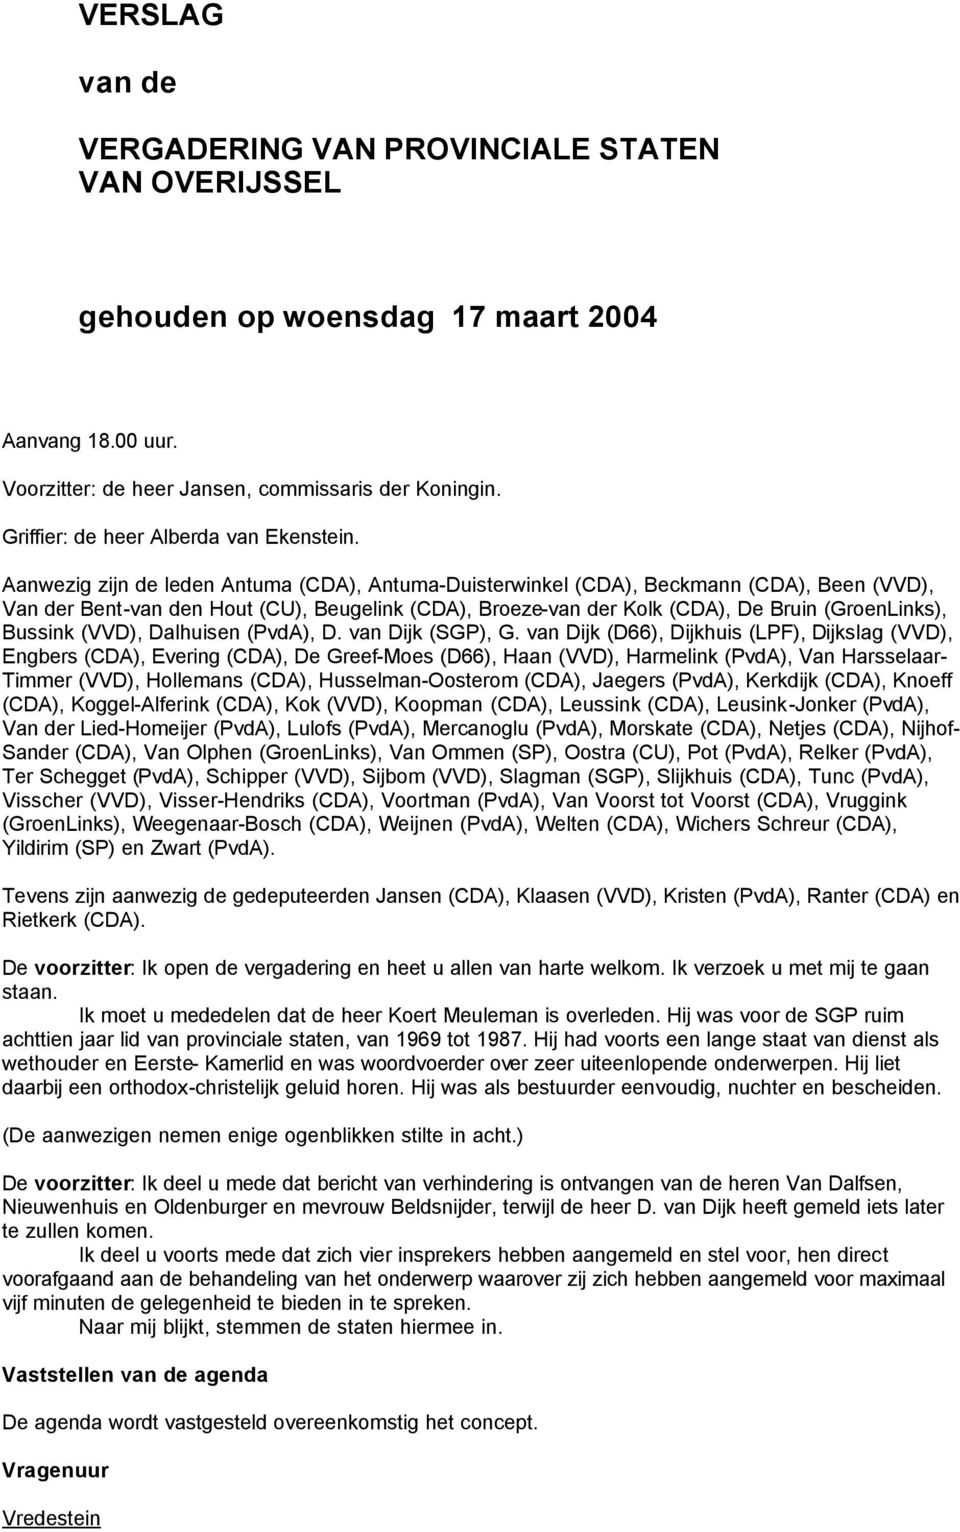 Aanwezig zijn de leden Antuma (CDA), Antuma-Duisterwinkel (CDA), Beckmann (CDA), Been (VVD), Van der Bent-van den Hout (CU), Beugelink (CDA), Broeze-van der Kolk (CDA), De Bruin (GroenLinks), Bussink